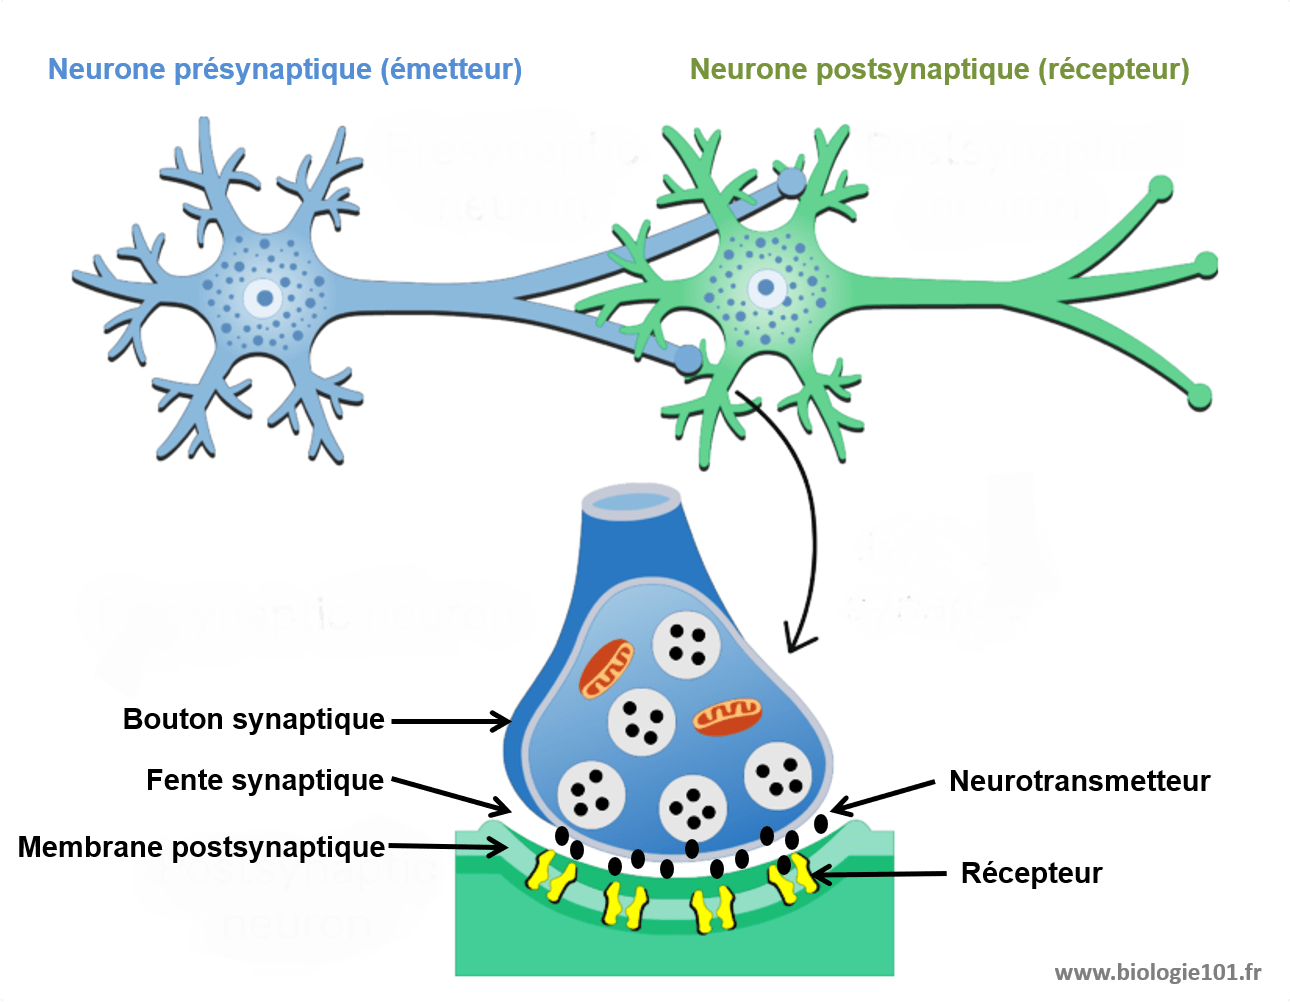 La synapse est l'élément intermédiaire entre deux neurones. Elle est composée d'un élément présynaptique qui contient des vésicules remplies de neurotransmetteurs qui vont être libérés dans la fente synaptique. Ces neurotransmetteurs vont ensuite être captés par l'élément postsynaptique qui va générer ou non un potentiel d'action en réponse.